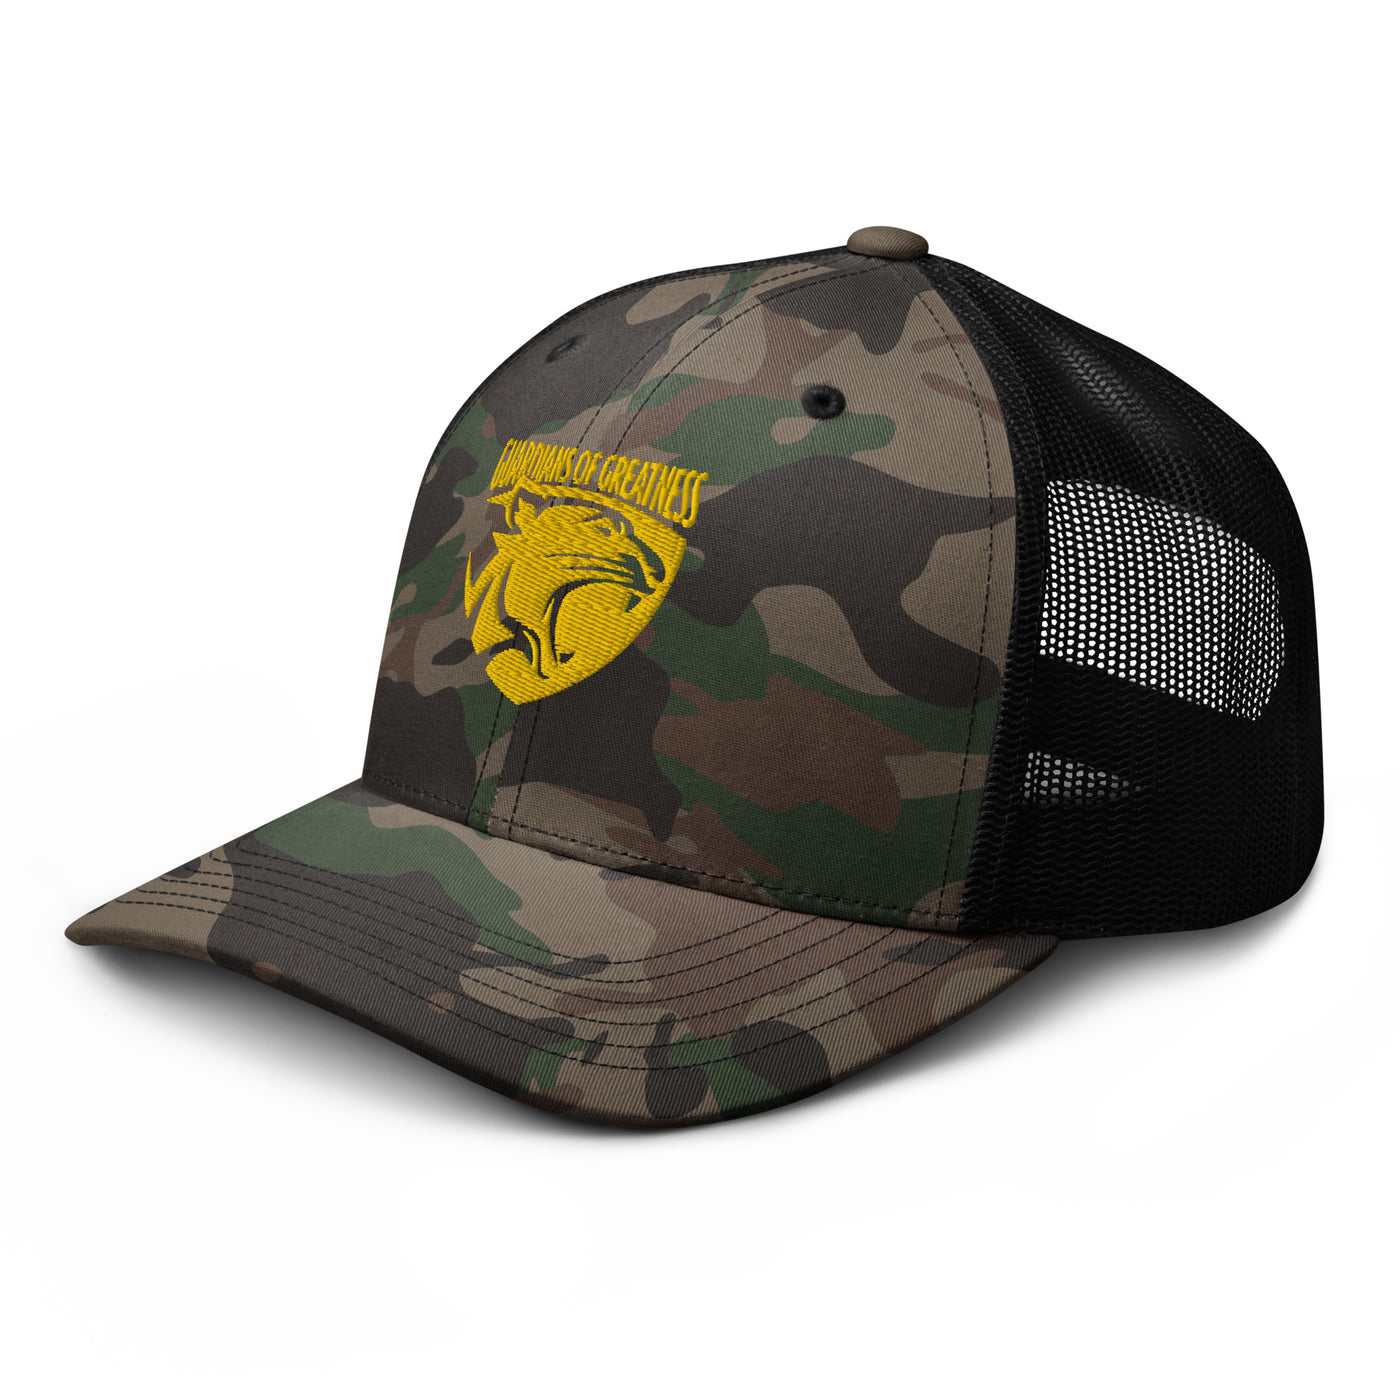 GOG Camouflage trucker hat